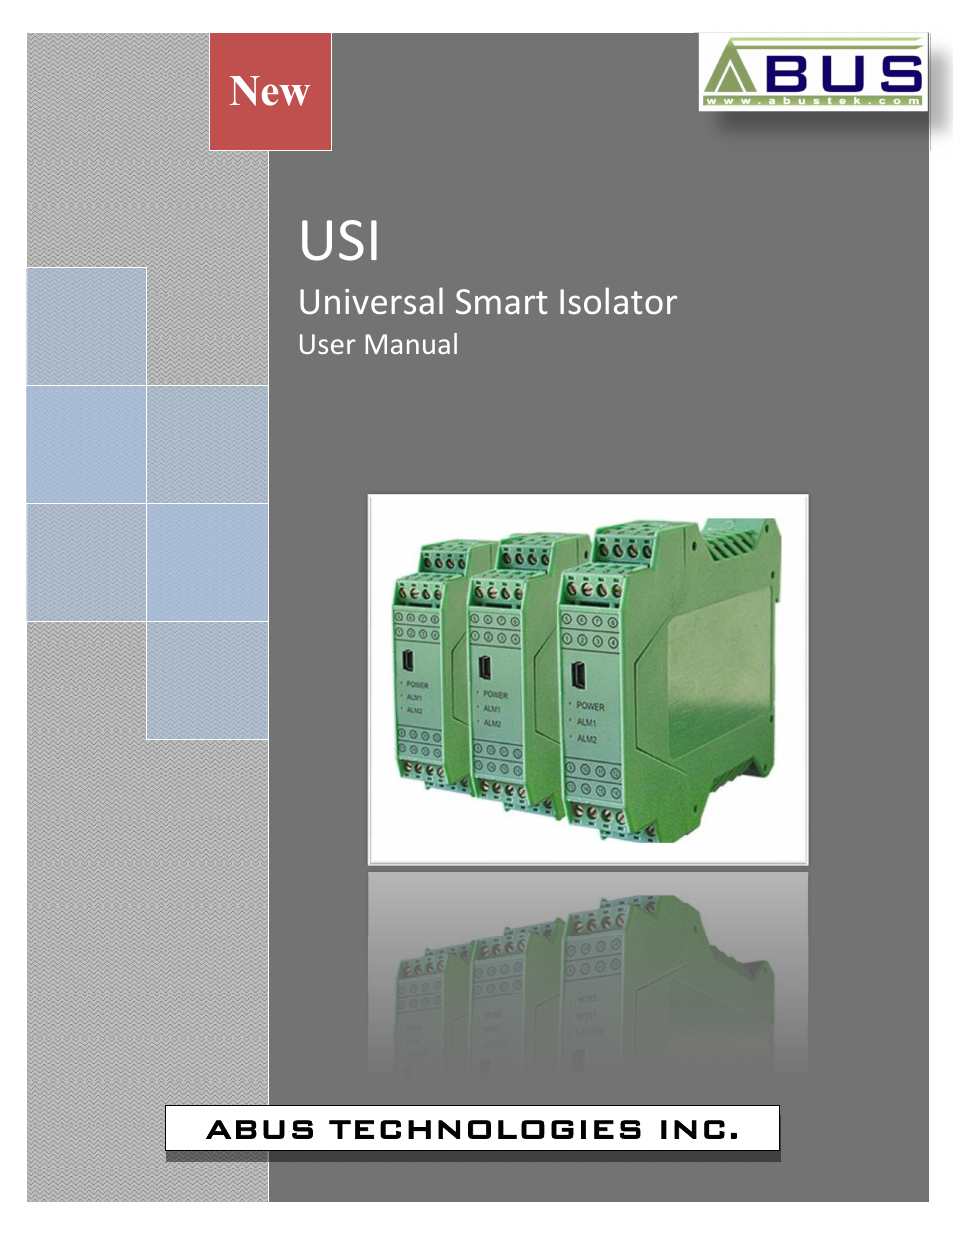 USI Universal Smart Isolator